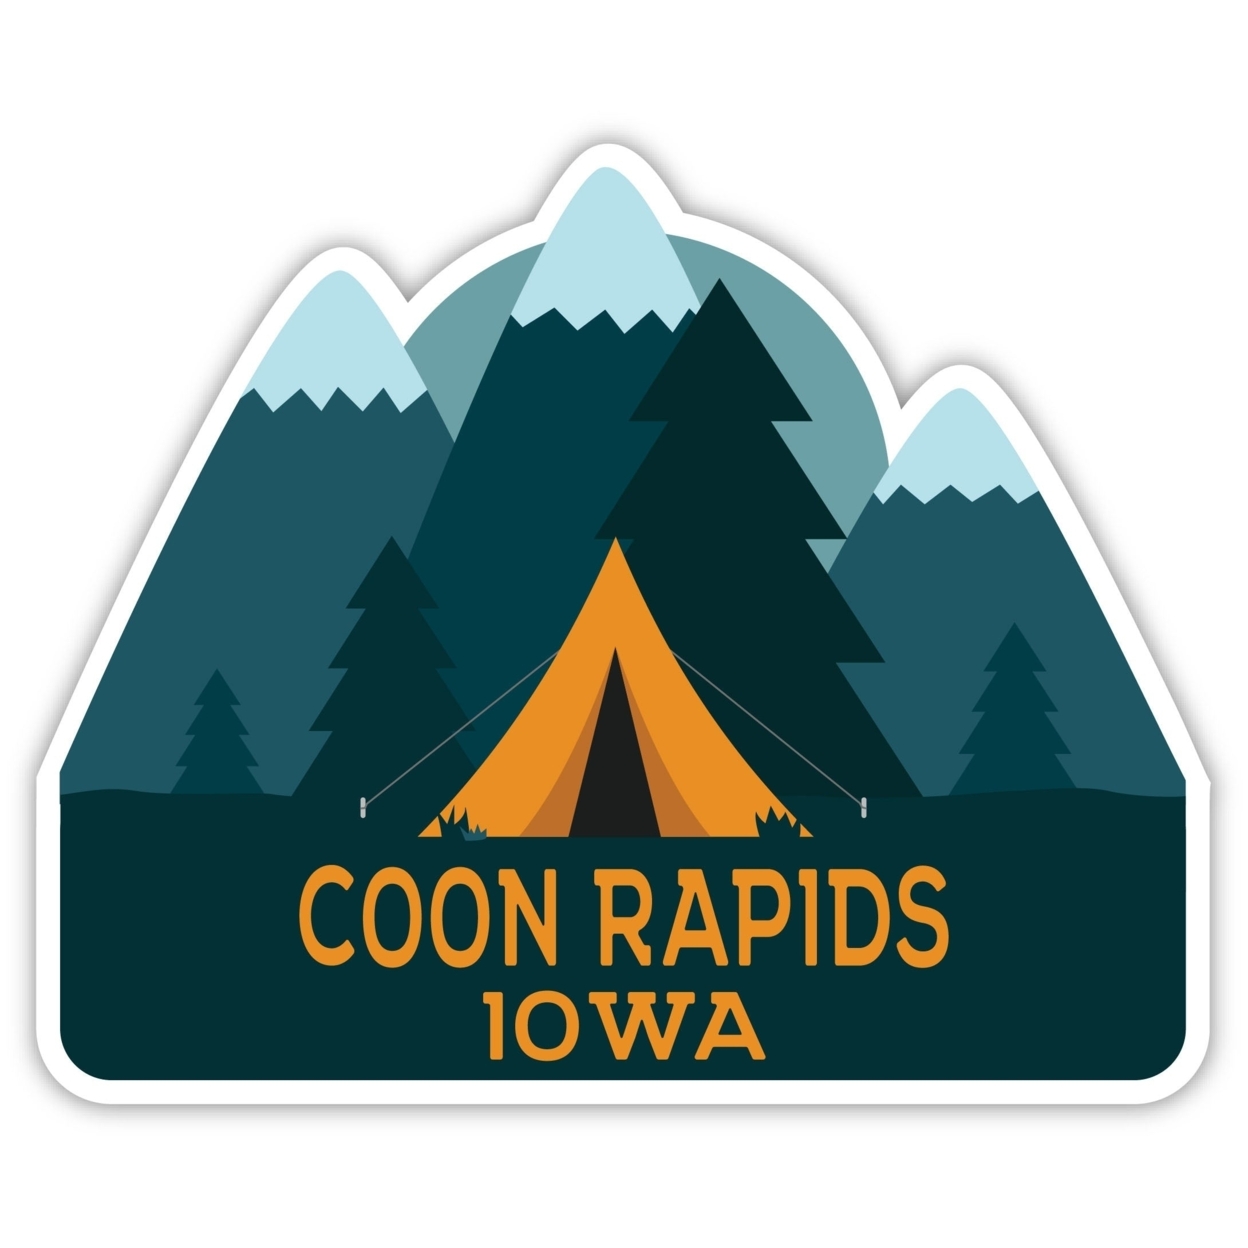 Coon Rapids Iowa Souvenir Decorative Stickers (Choose Theme And Size) - Single Unit, 12-Inch, Tent